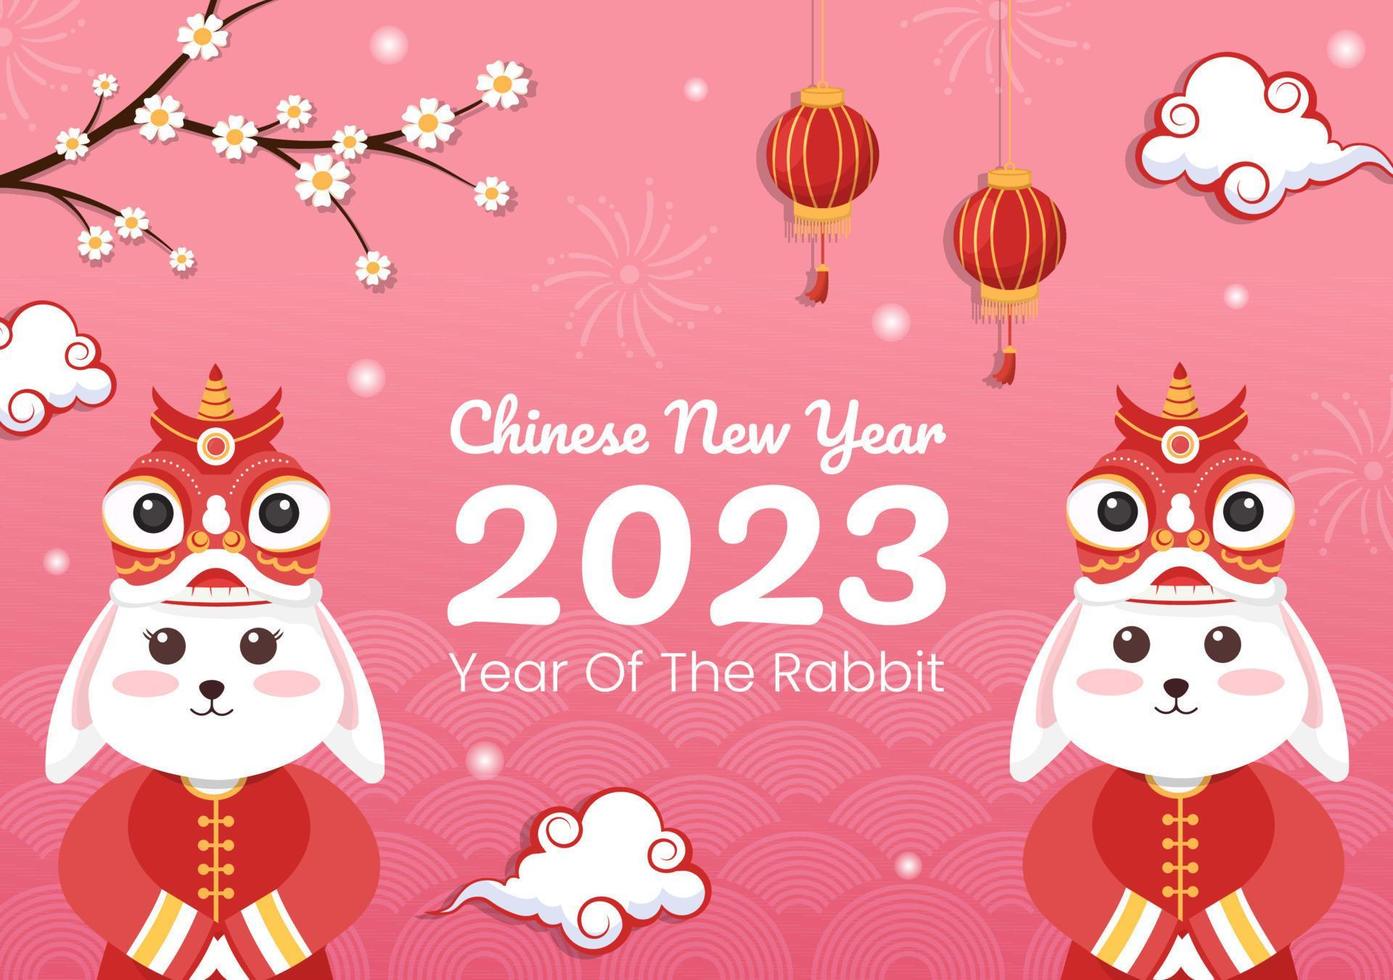 año nuevo lunar chino 2023 día del conejo plantilla de signo del zodiaco dibujado a mano ilustración plana de dibujos animados con flor, linterna y fondo de color rojo vector